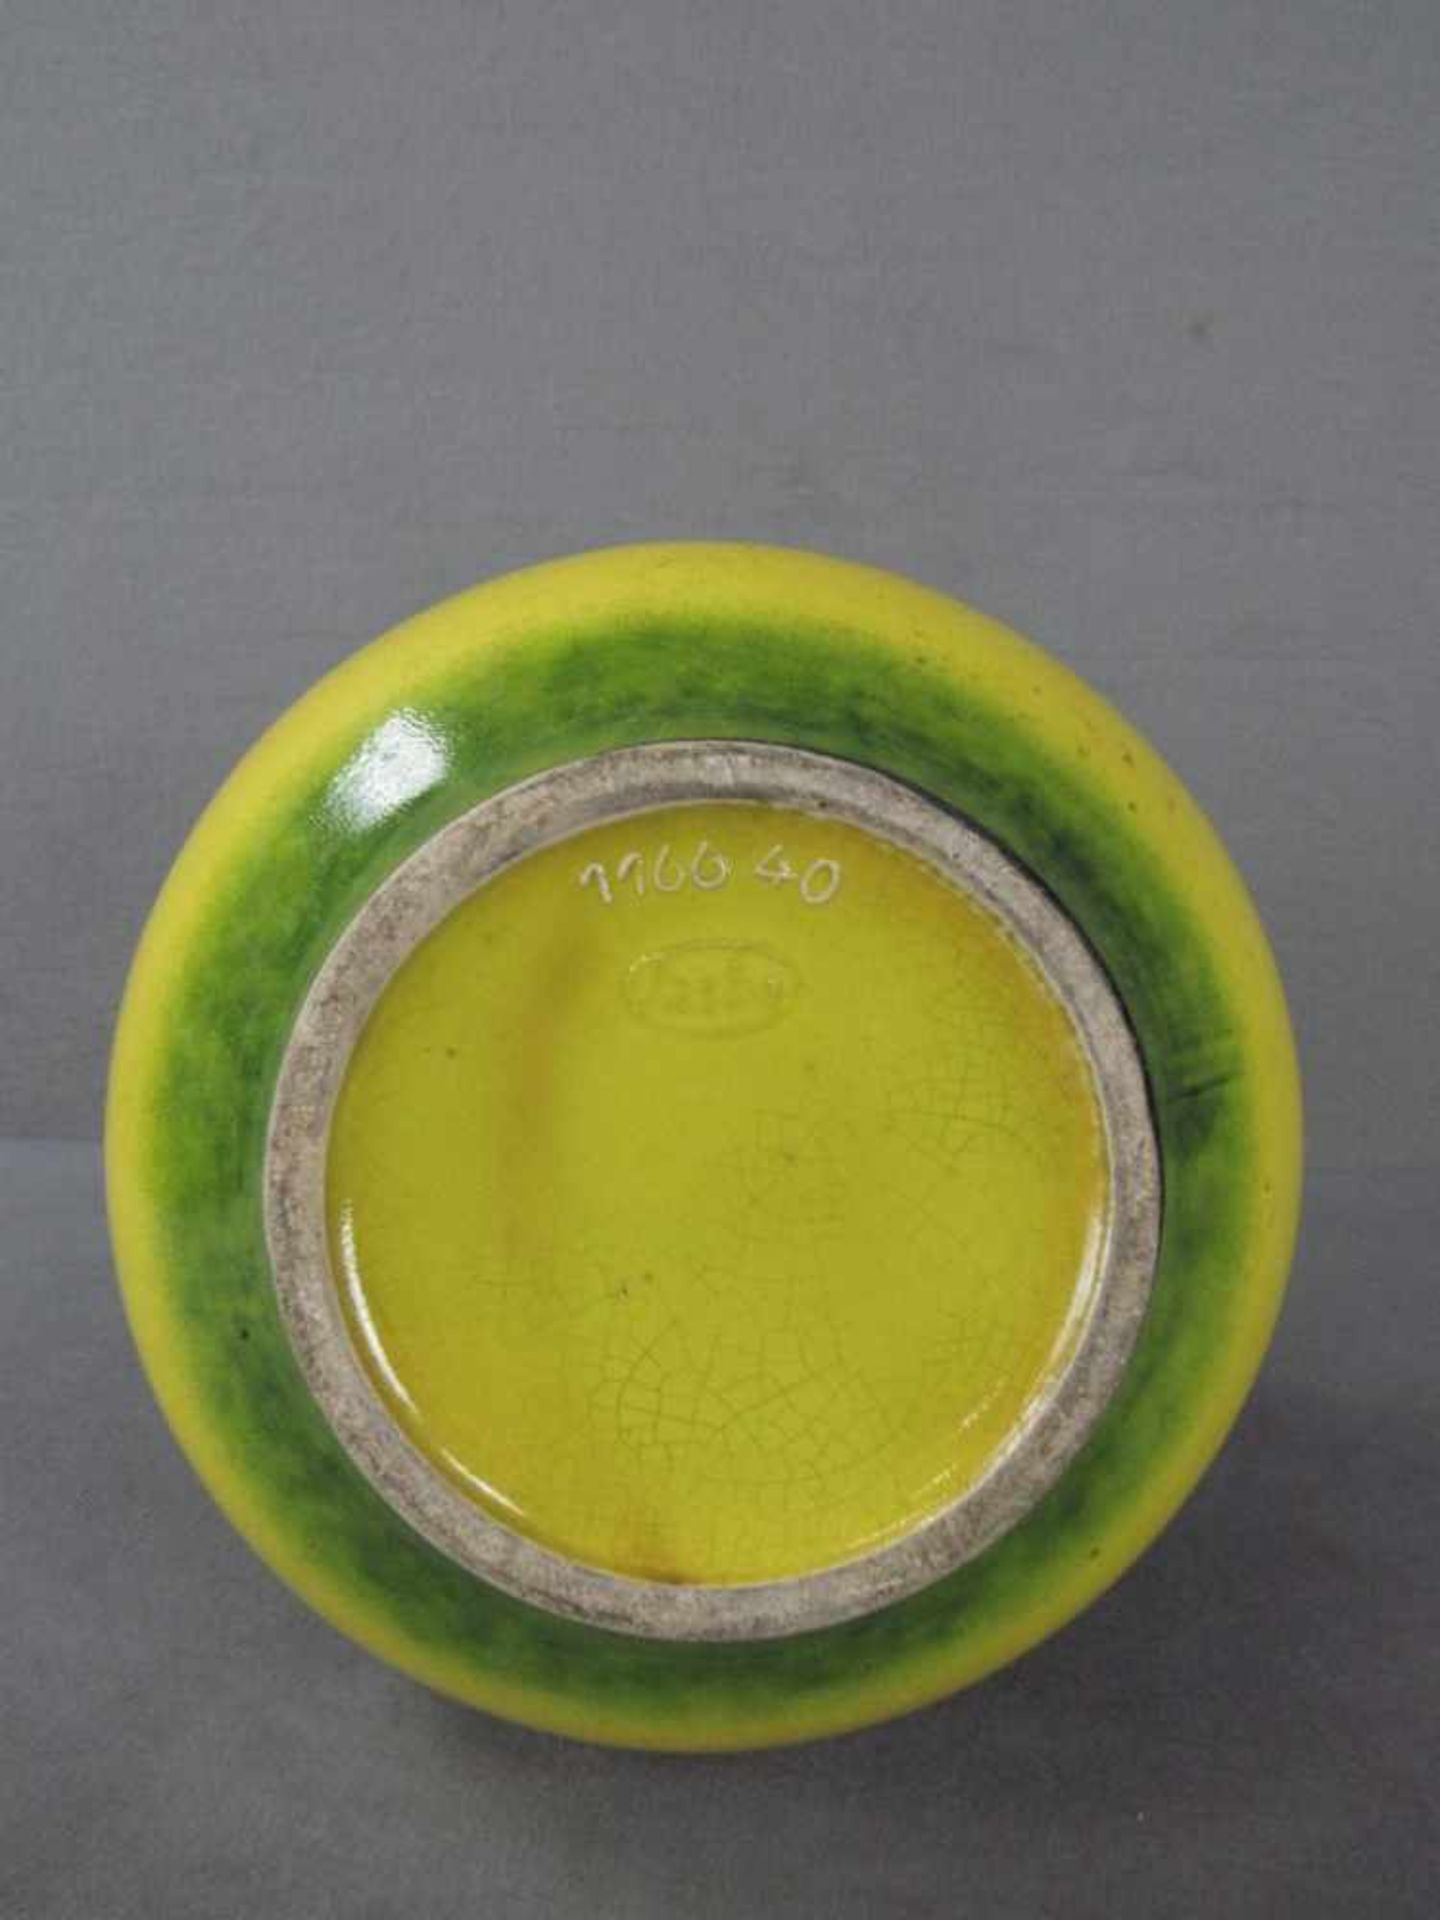 Designer Keramikvase gelb grün lasiert 40cm hoch gemarkt - Bild 2 aus 4